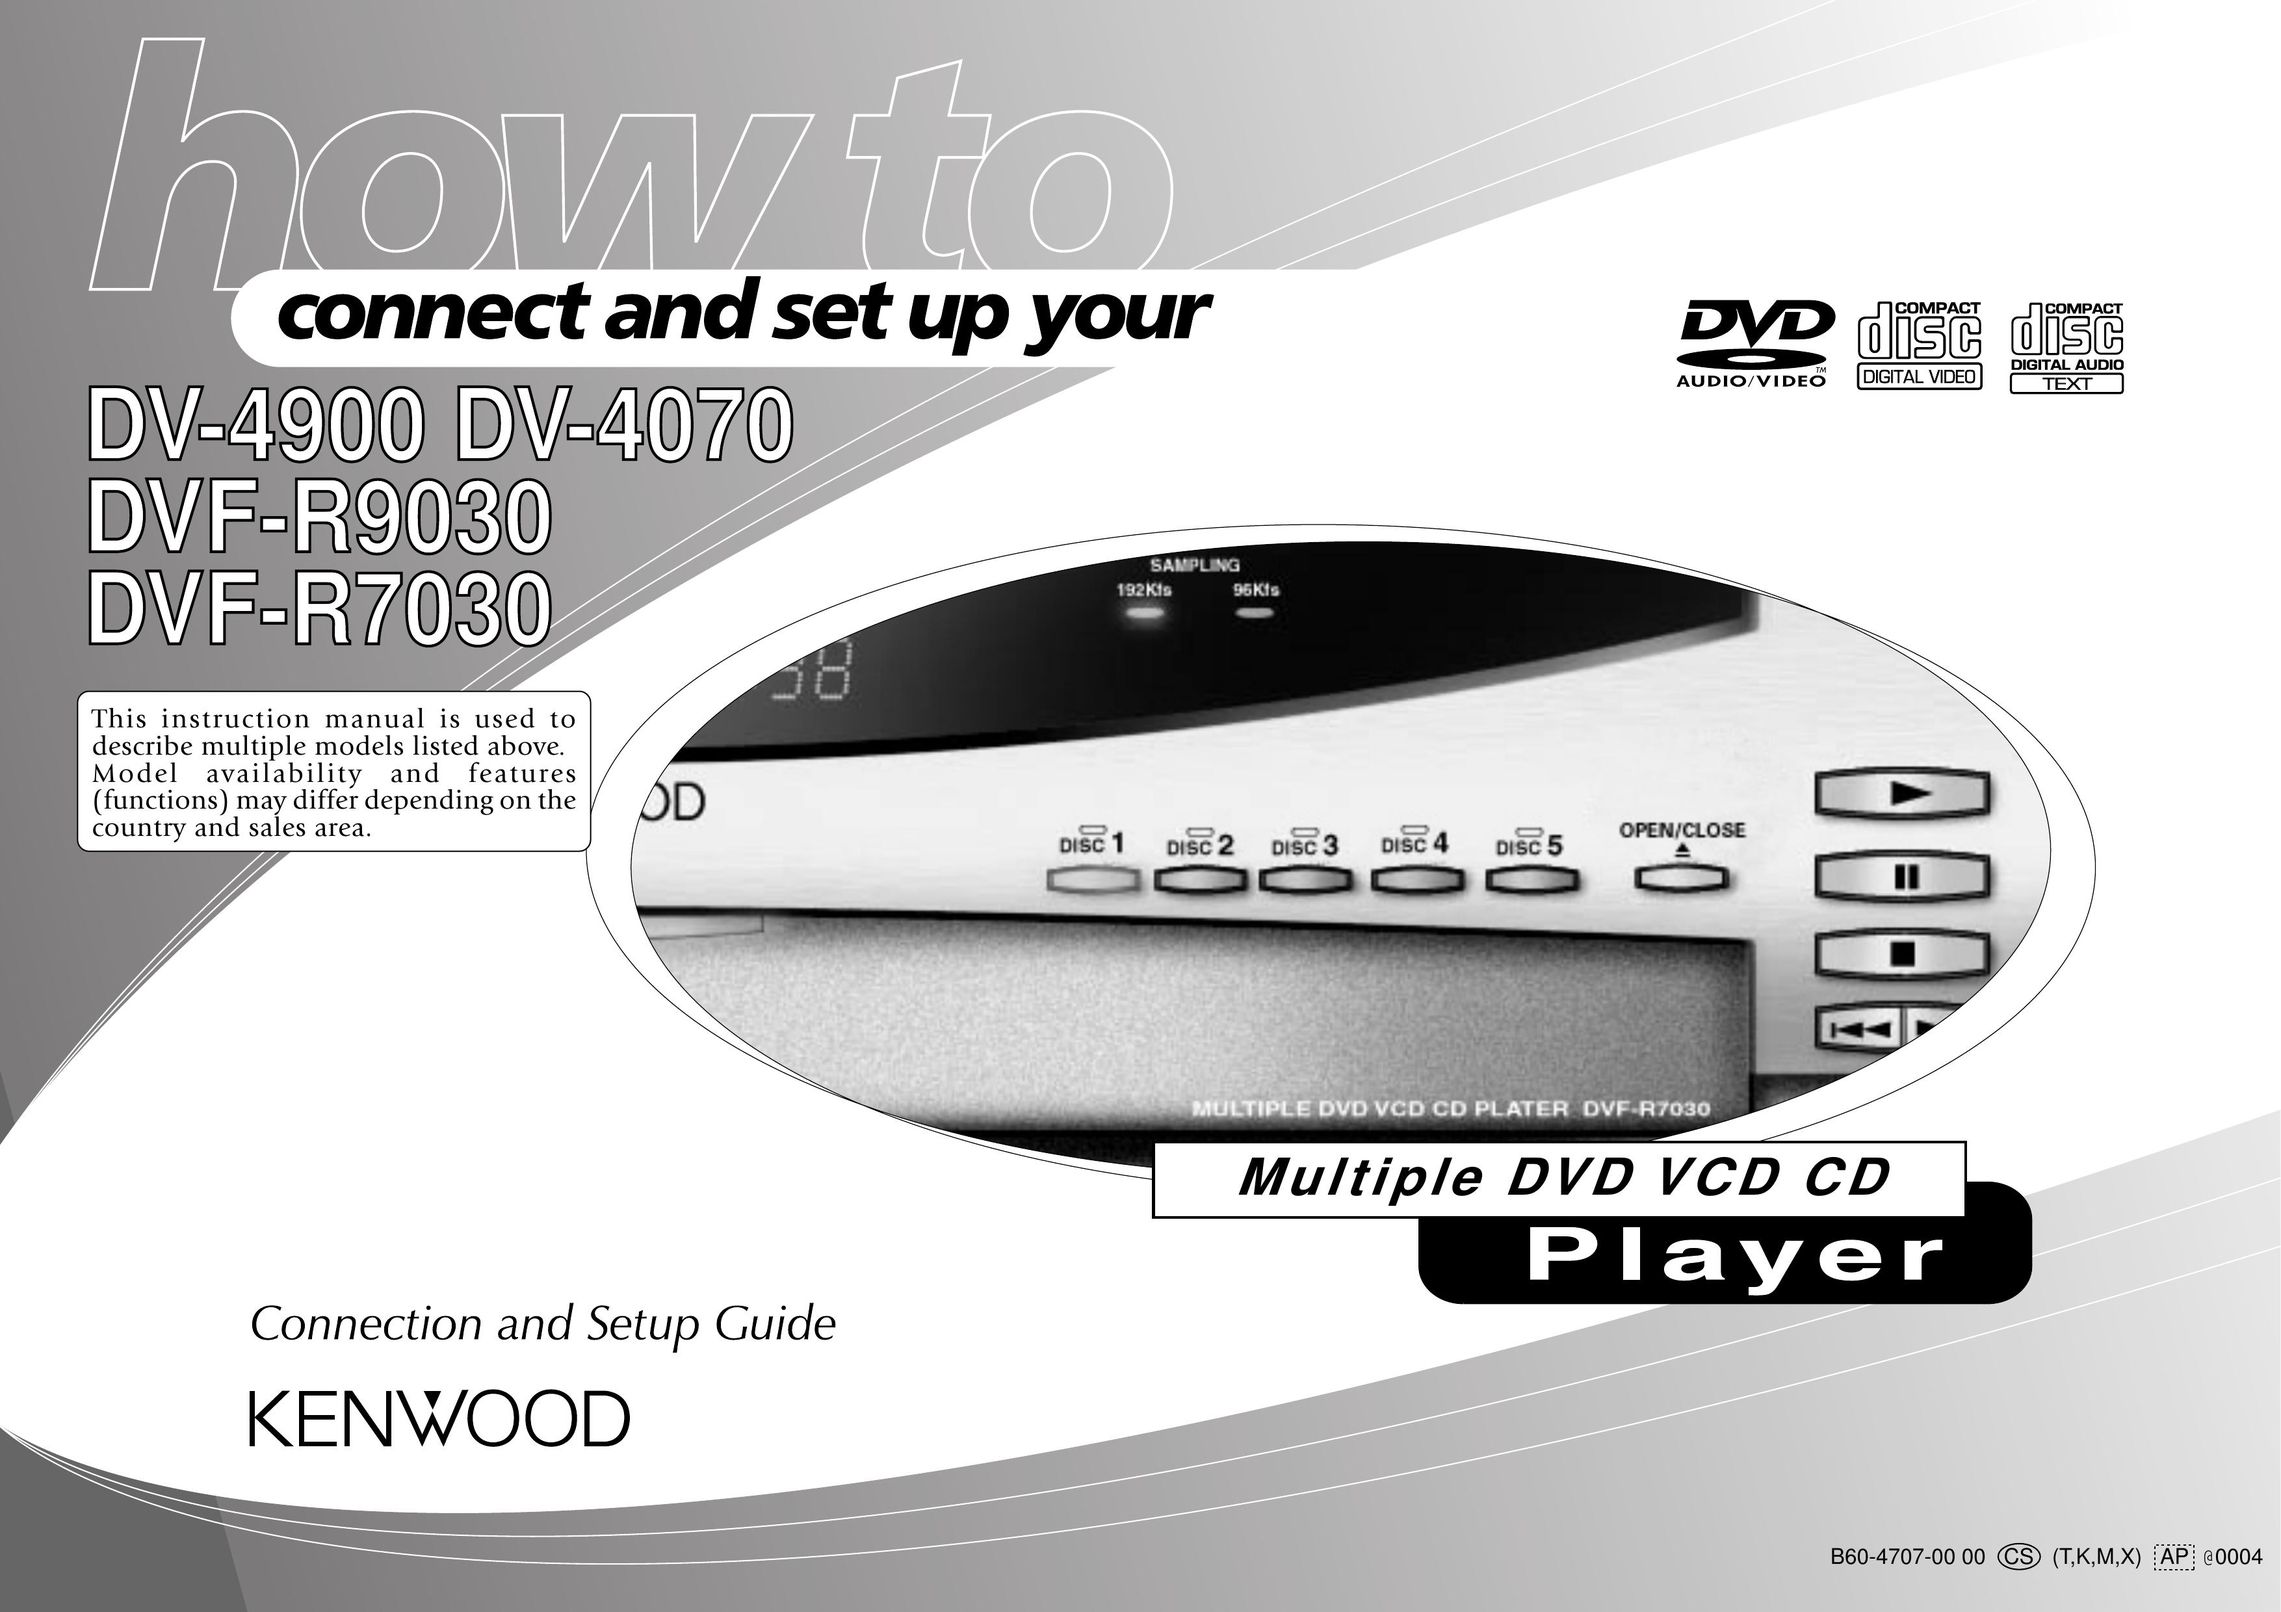 Kenwood DVF-R7030 DVD Player User Manual